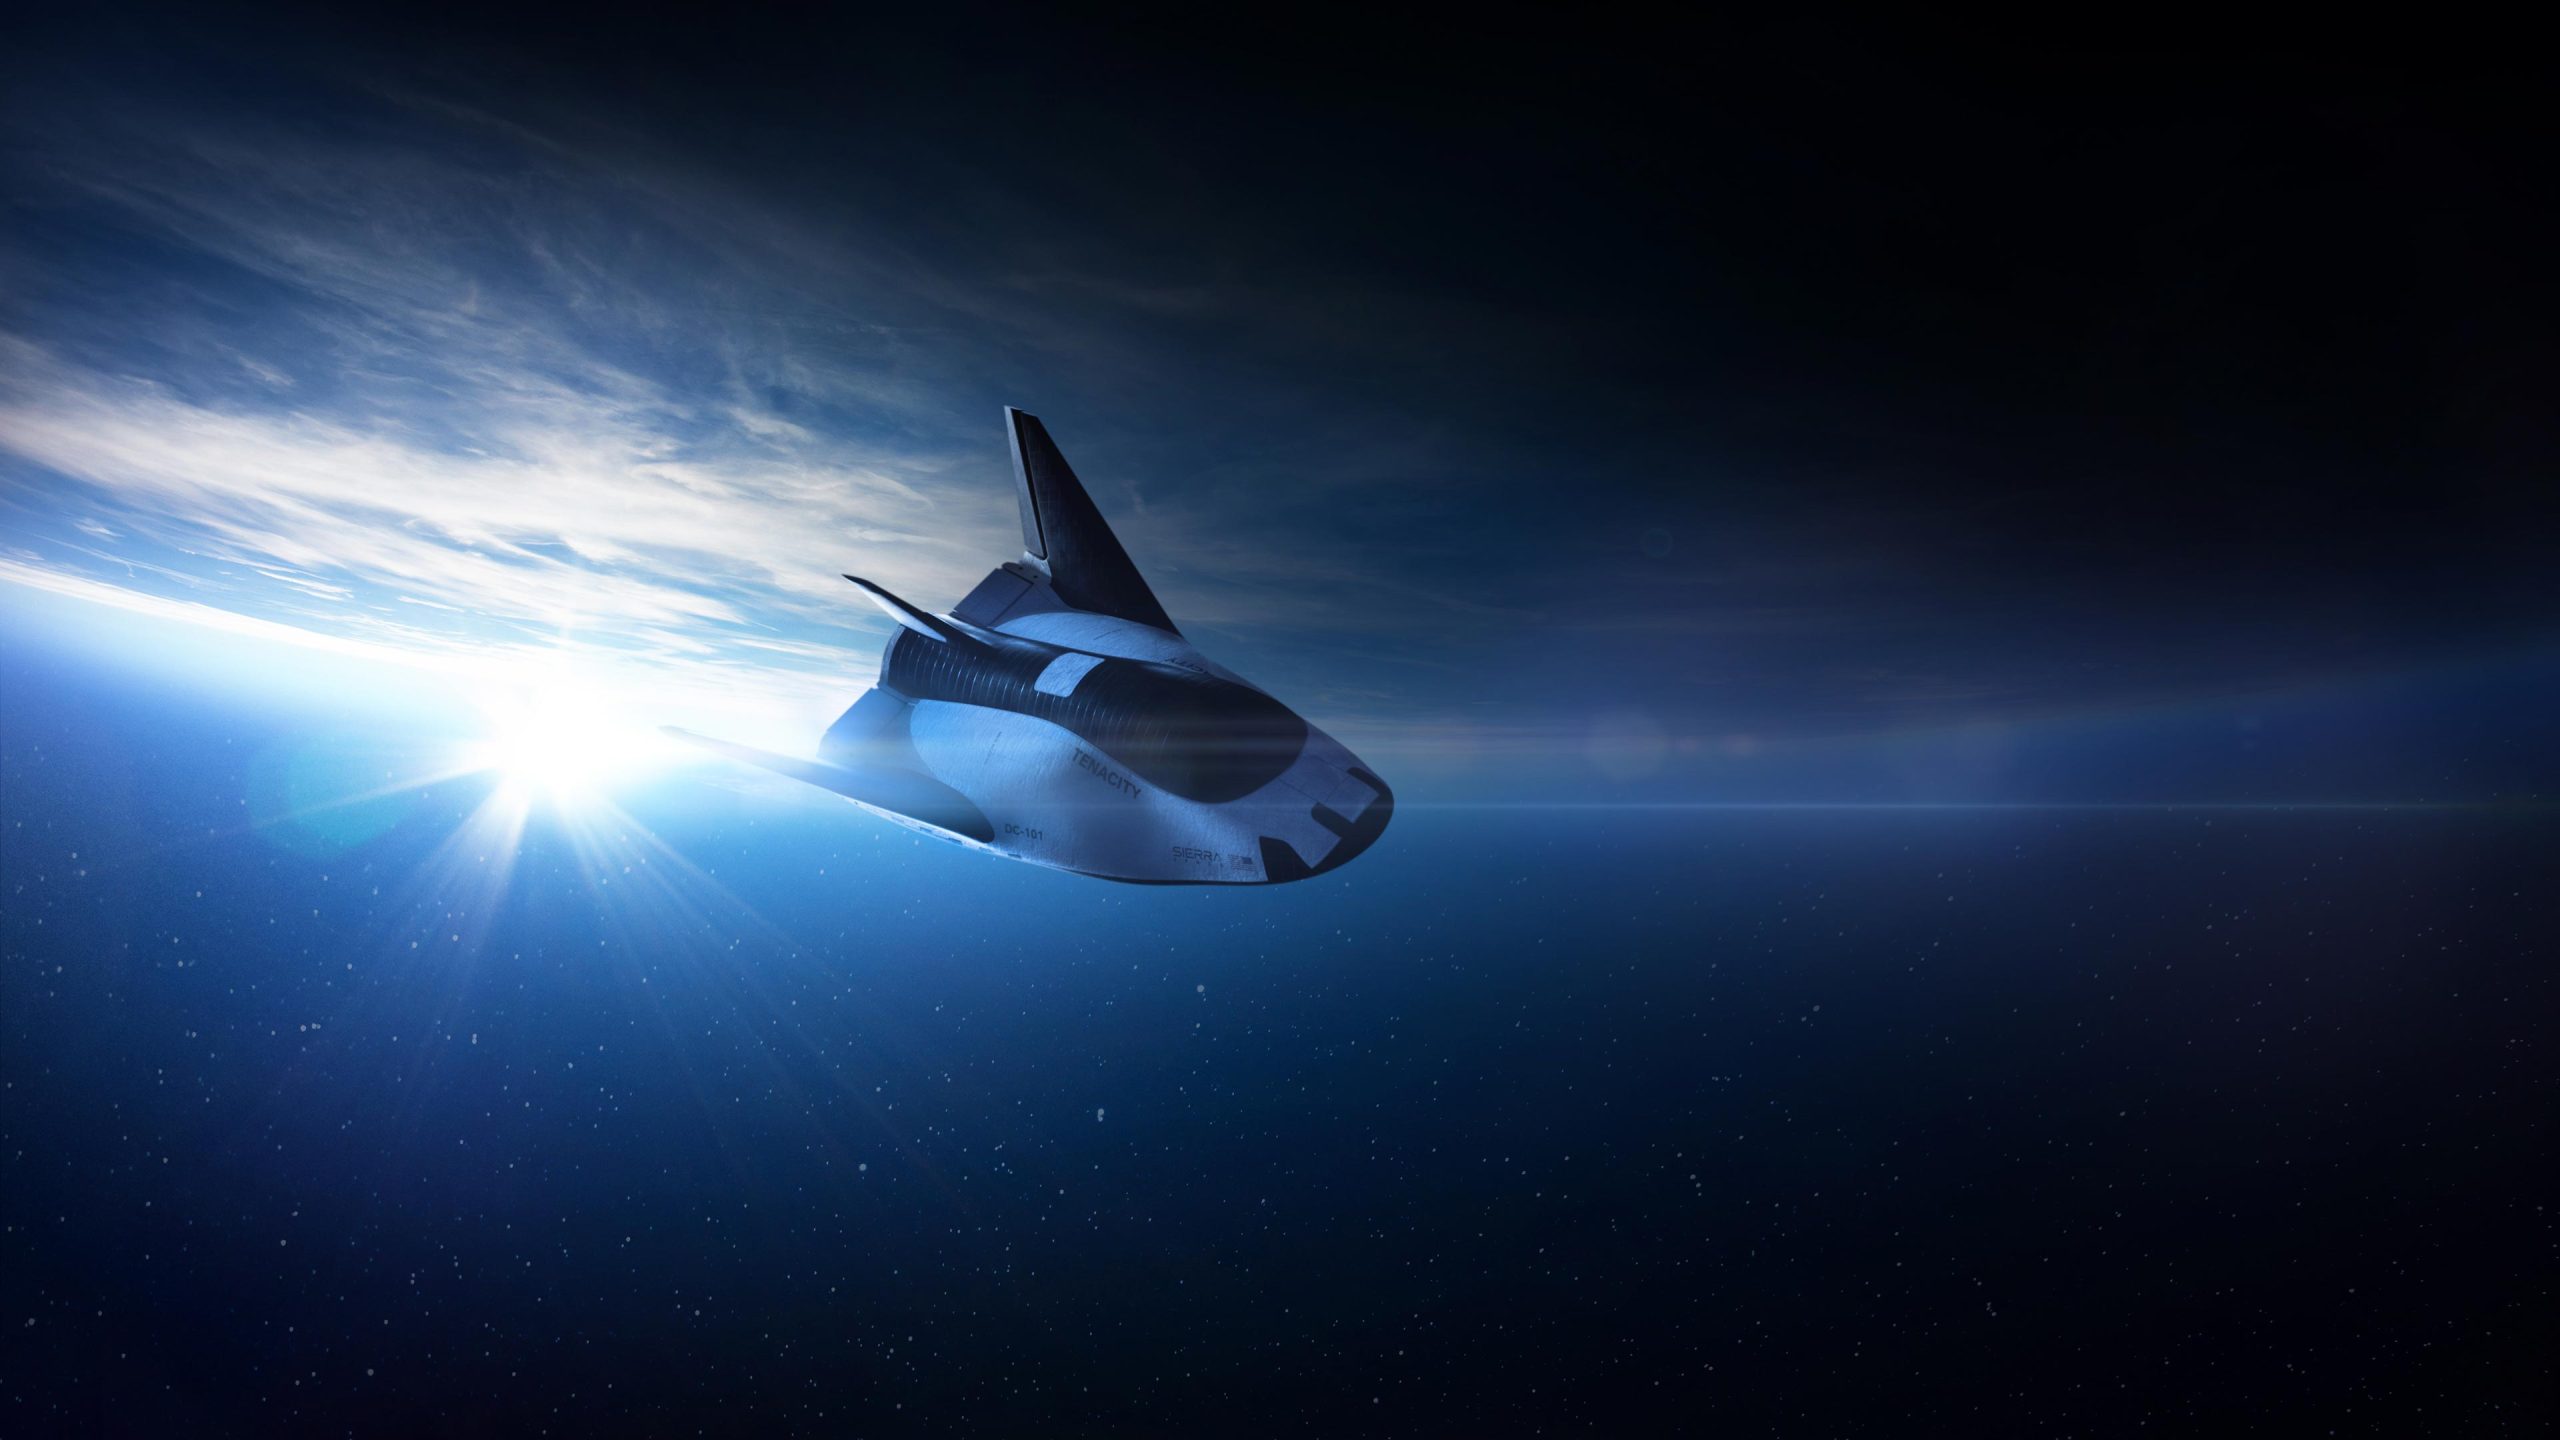 Sierra-Space-Dream-Chaser-Spacecraft-scaled.jpg